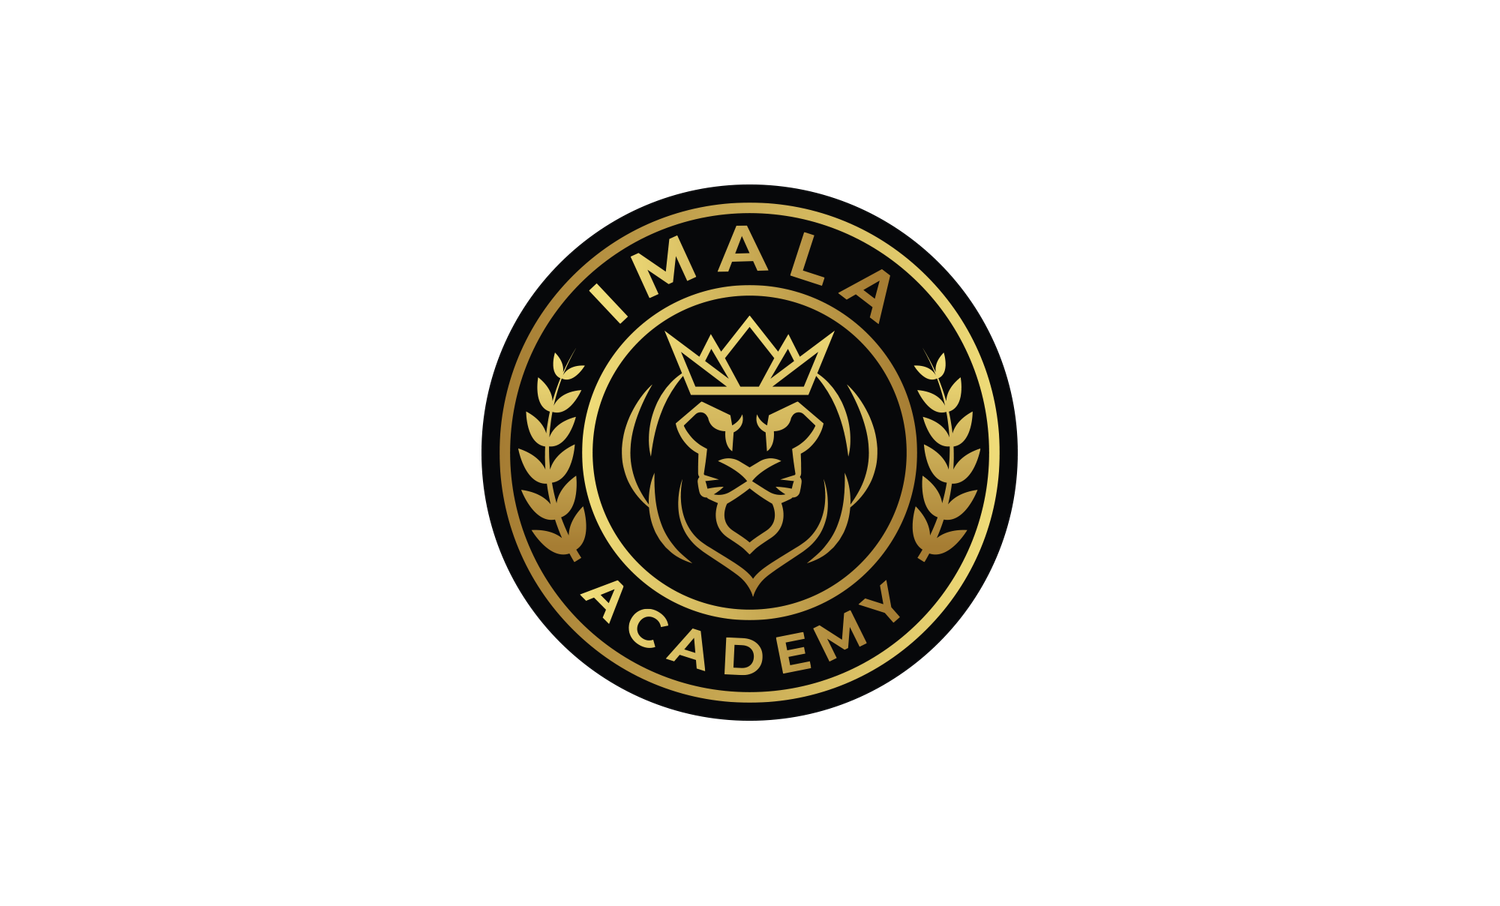 Imala Academy